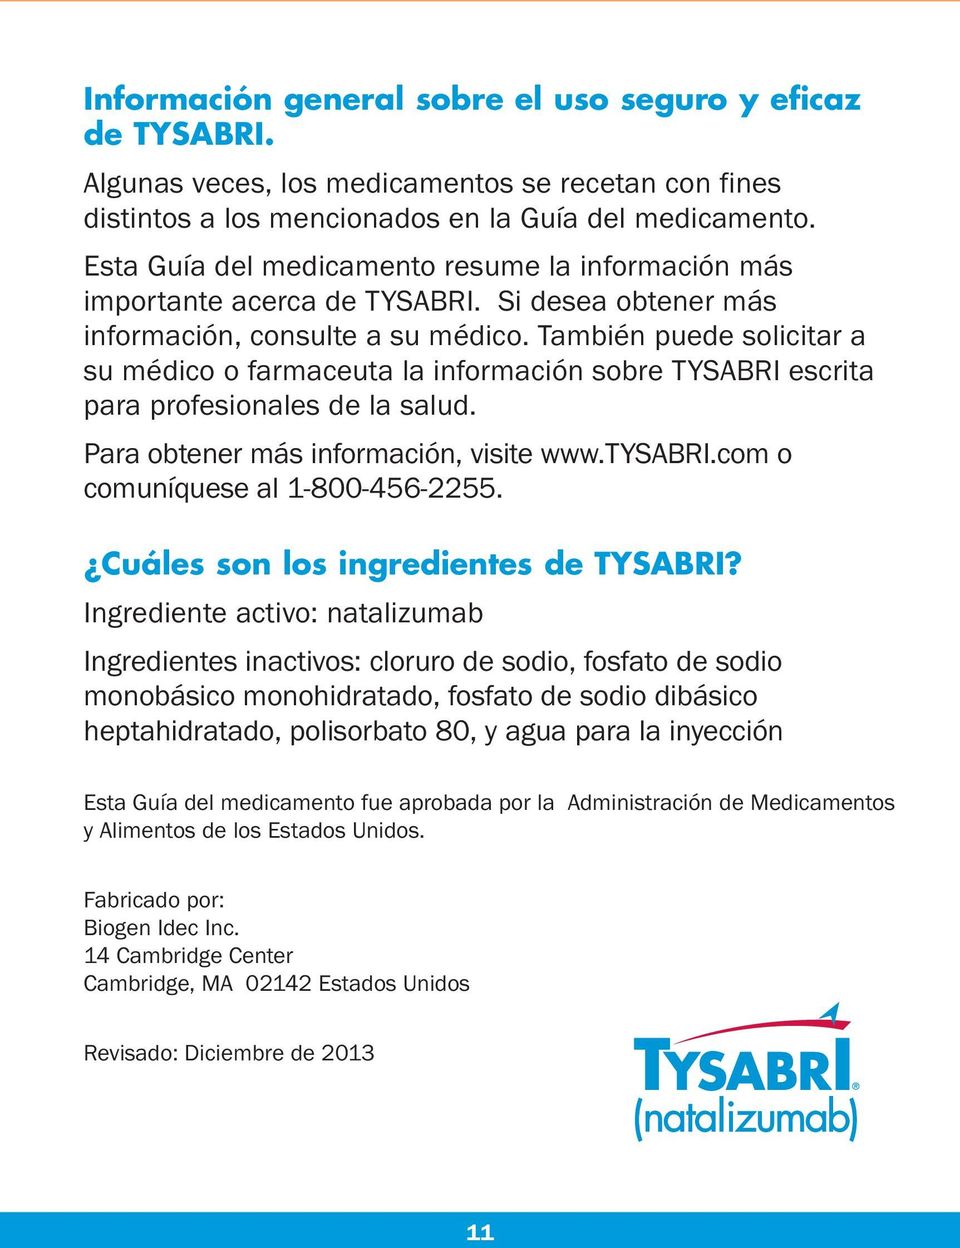 También puede solicitar a su médico o farmaceuta la información sobre TYSABRI escrita para profesionales de la salud. Para obtener más información, visite www.tysabri.